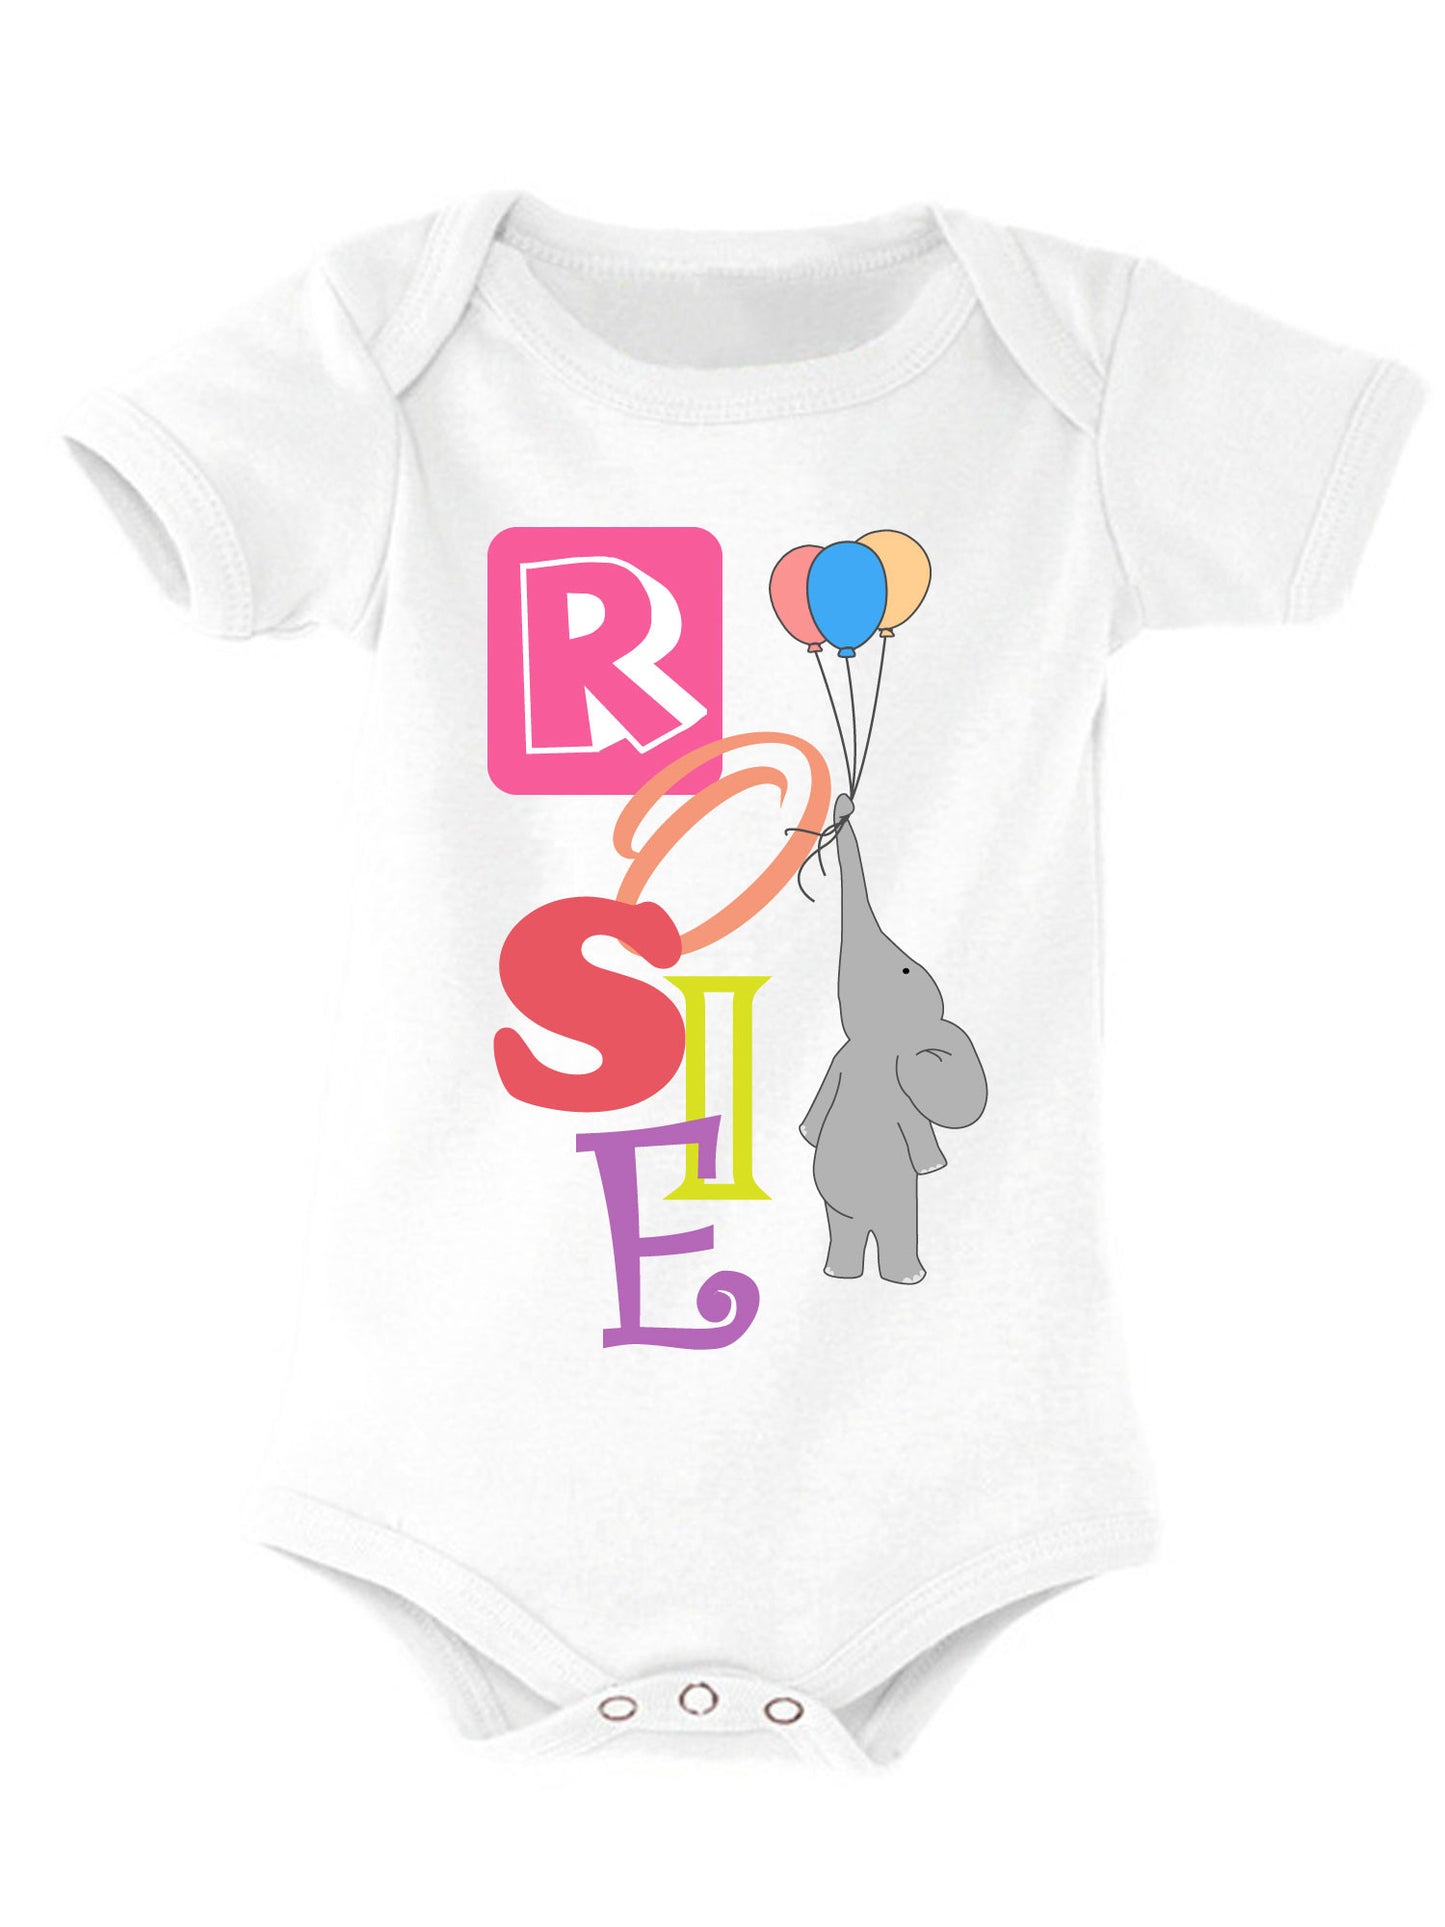 Personalised Name Baby Vest Bodysuit Onesie